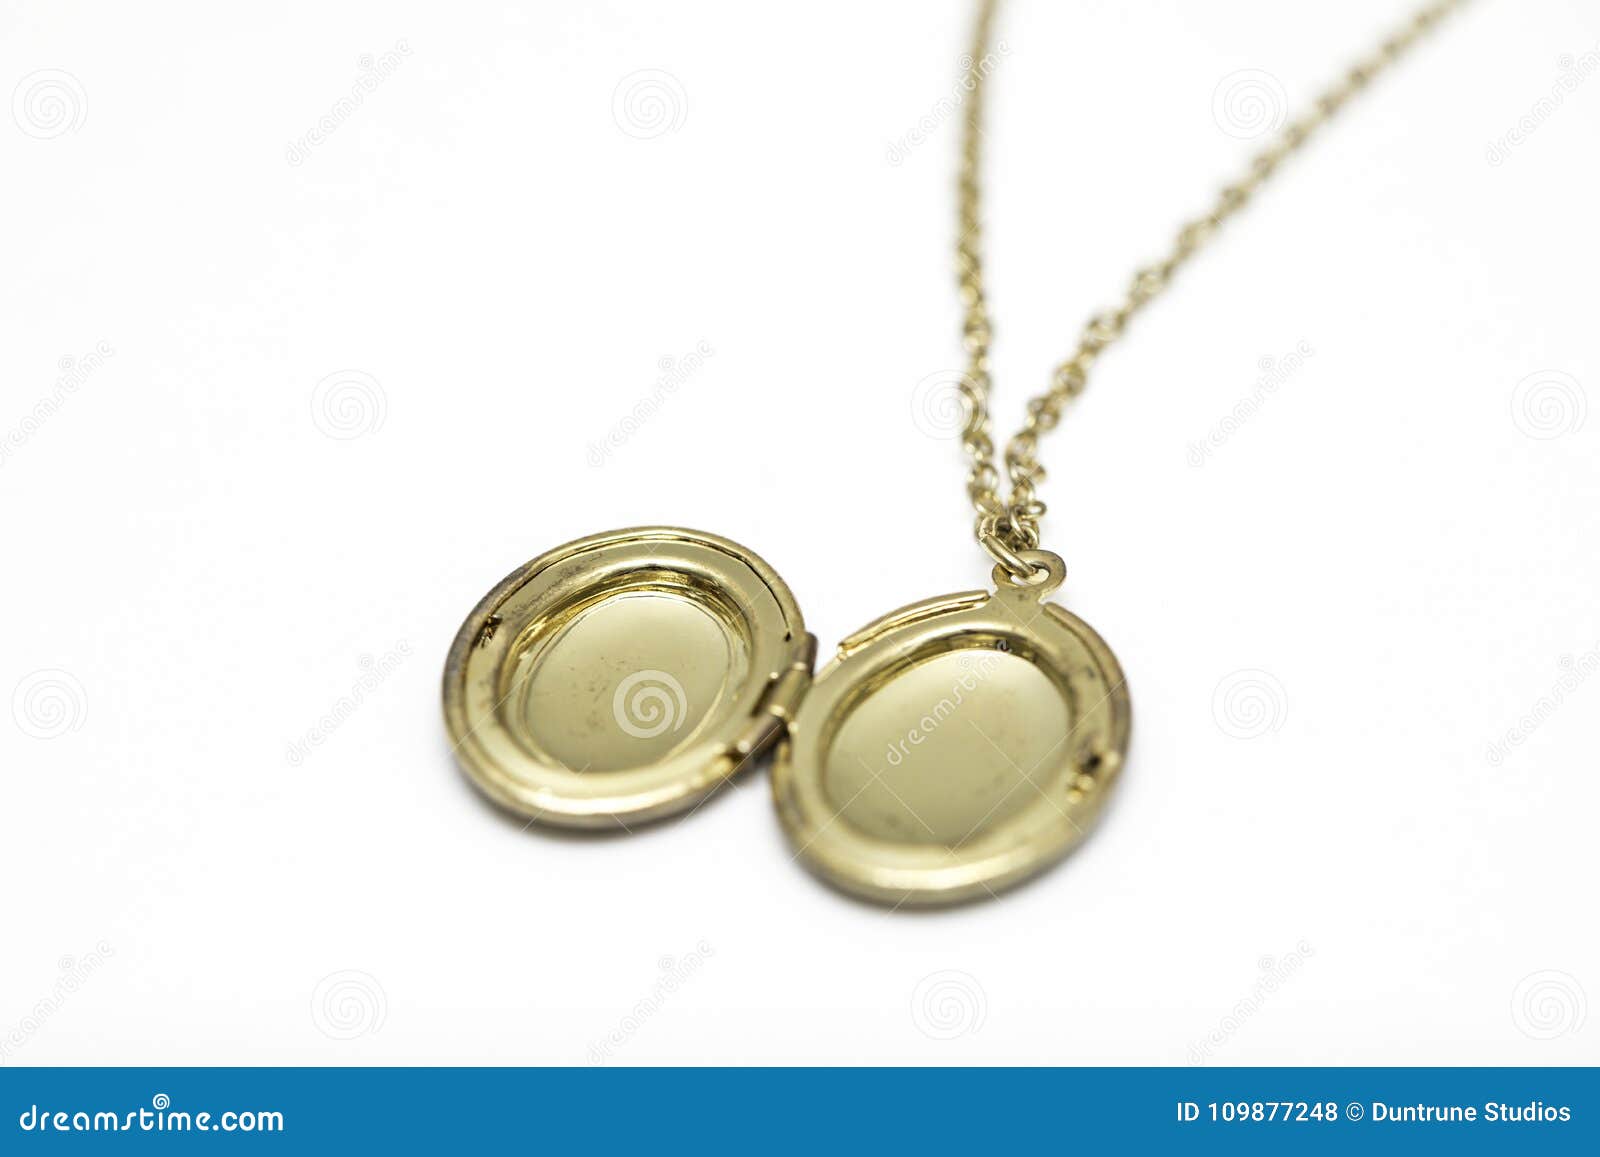 Gold Pendant Locket Necklace Stock Photo - Image of inheritance, name ...